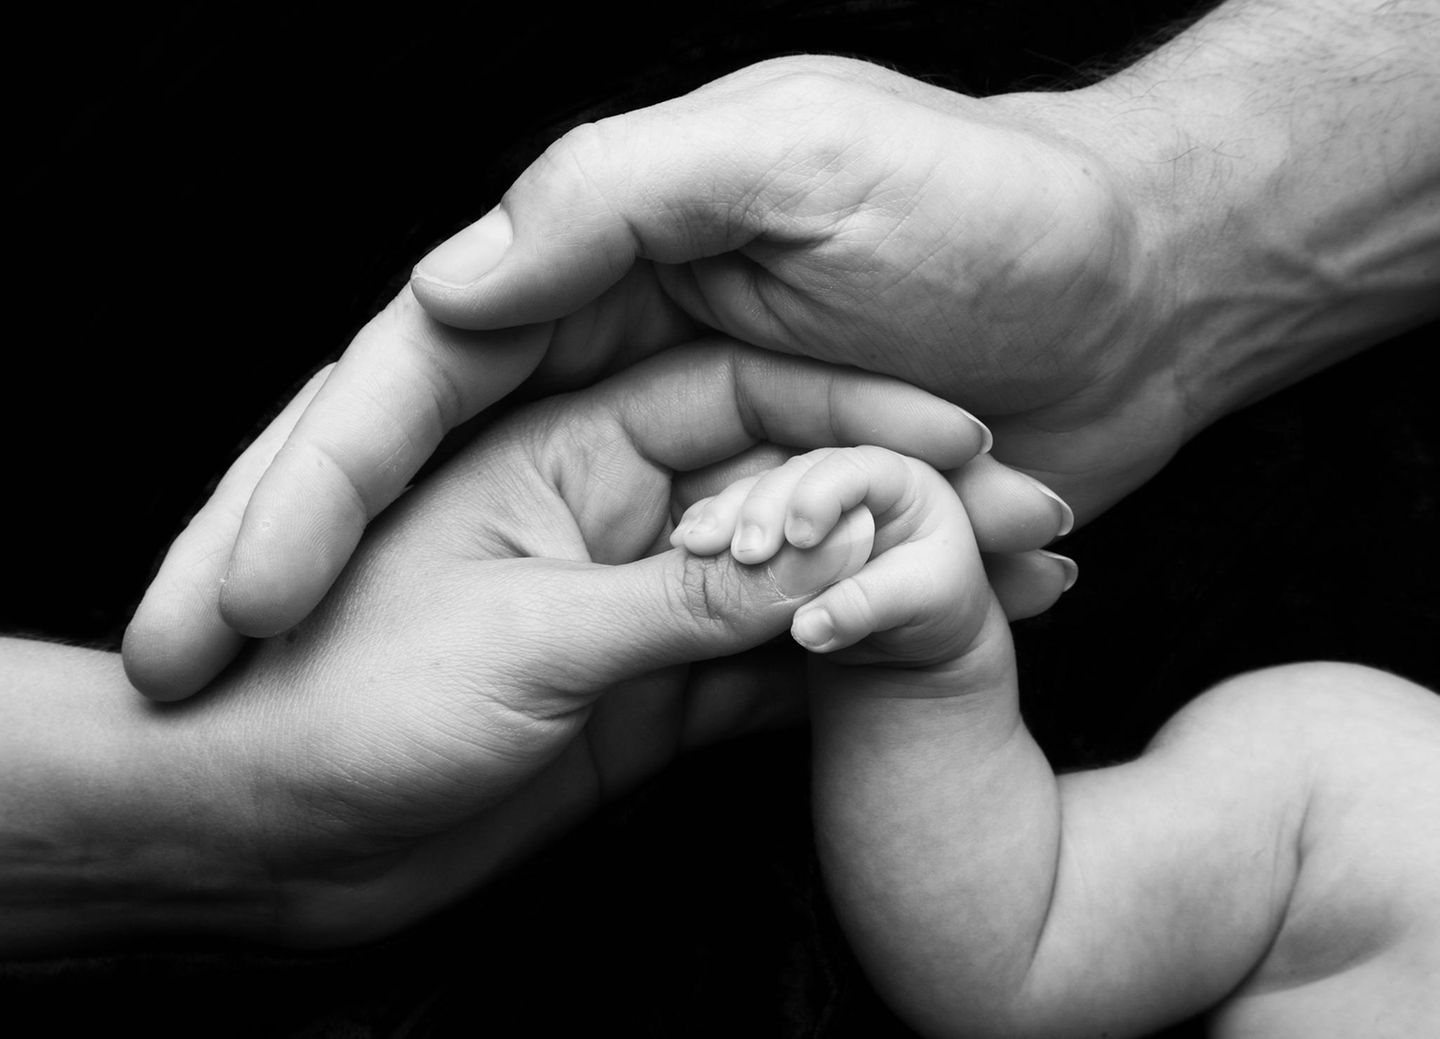 Babyfotografie: 9 zauberhafte Bilder der ersten Momente mit Kind